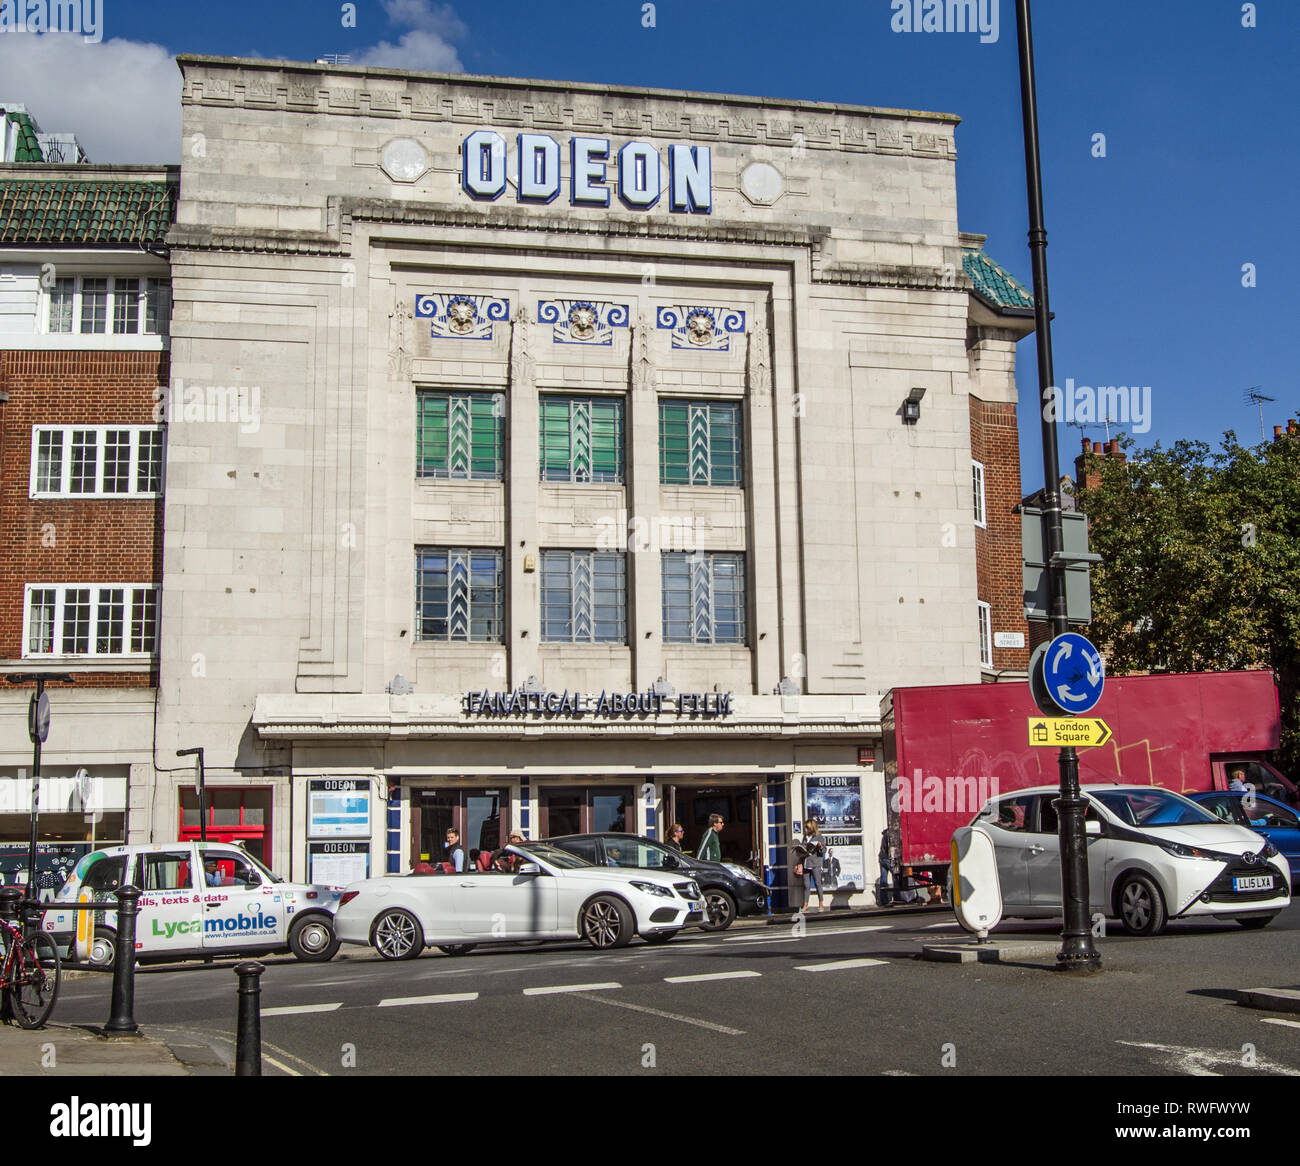 RICHMOND-upon-Thames, Großbritannien - 20 September 2015: Verkehr und Fußgänger der viel befahrenen Kreuzung Pass vor dem historischen Richmond Kino Odeon mit seinen Stockfoto